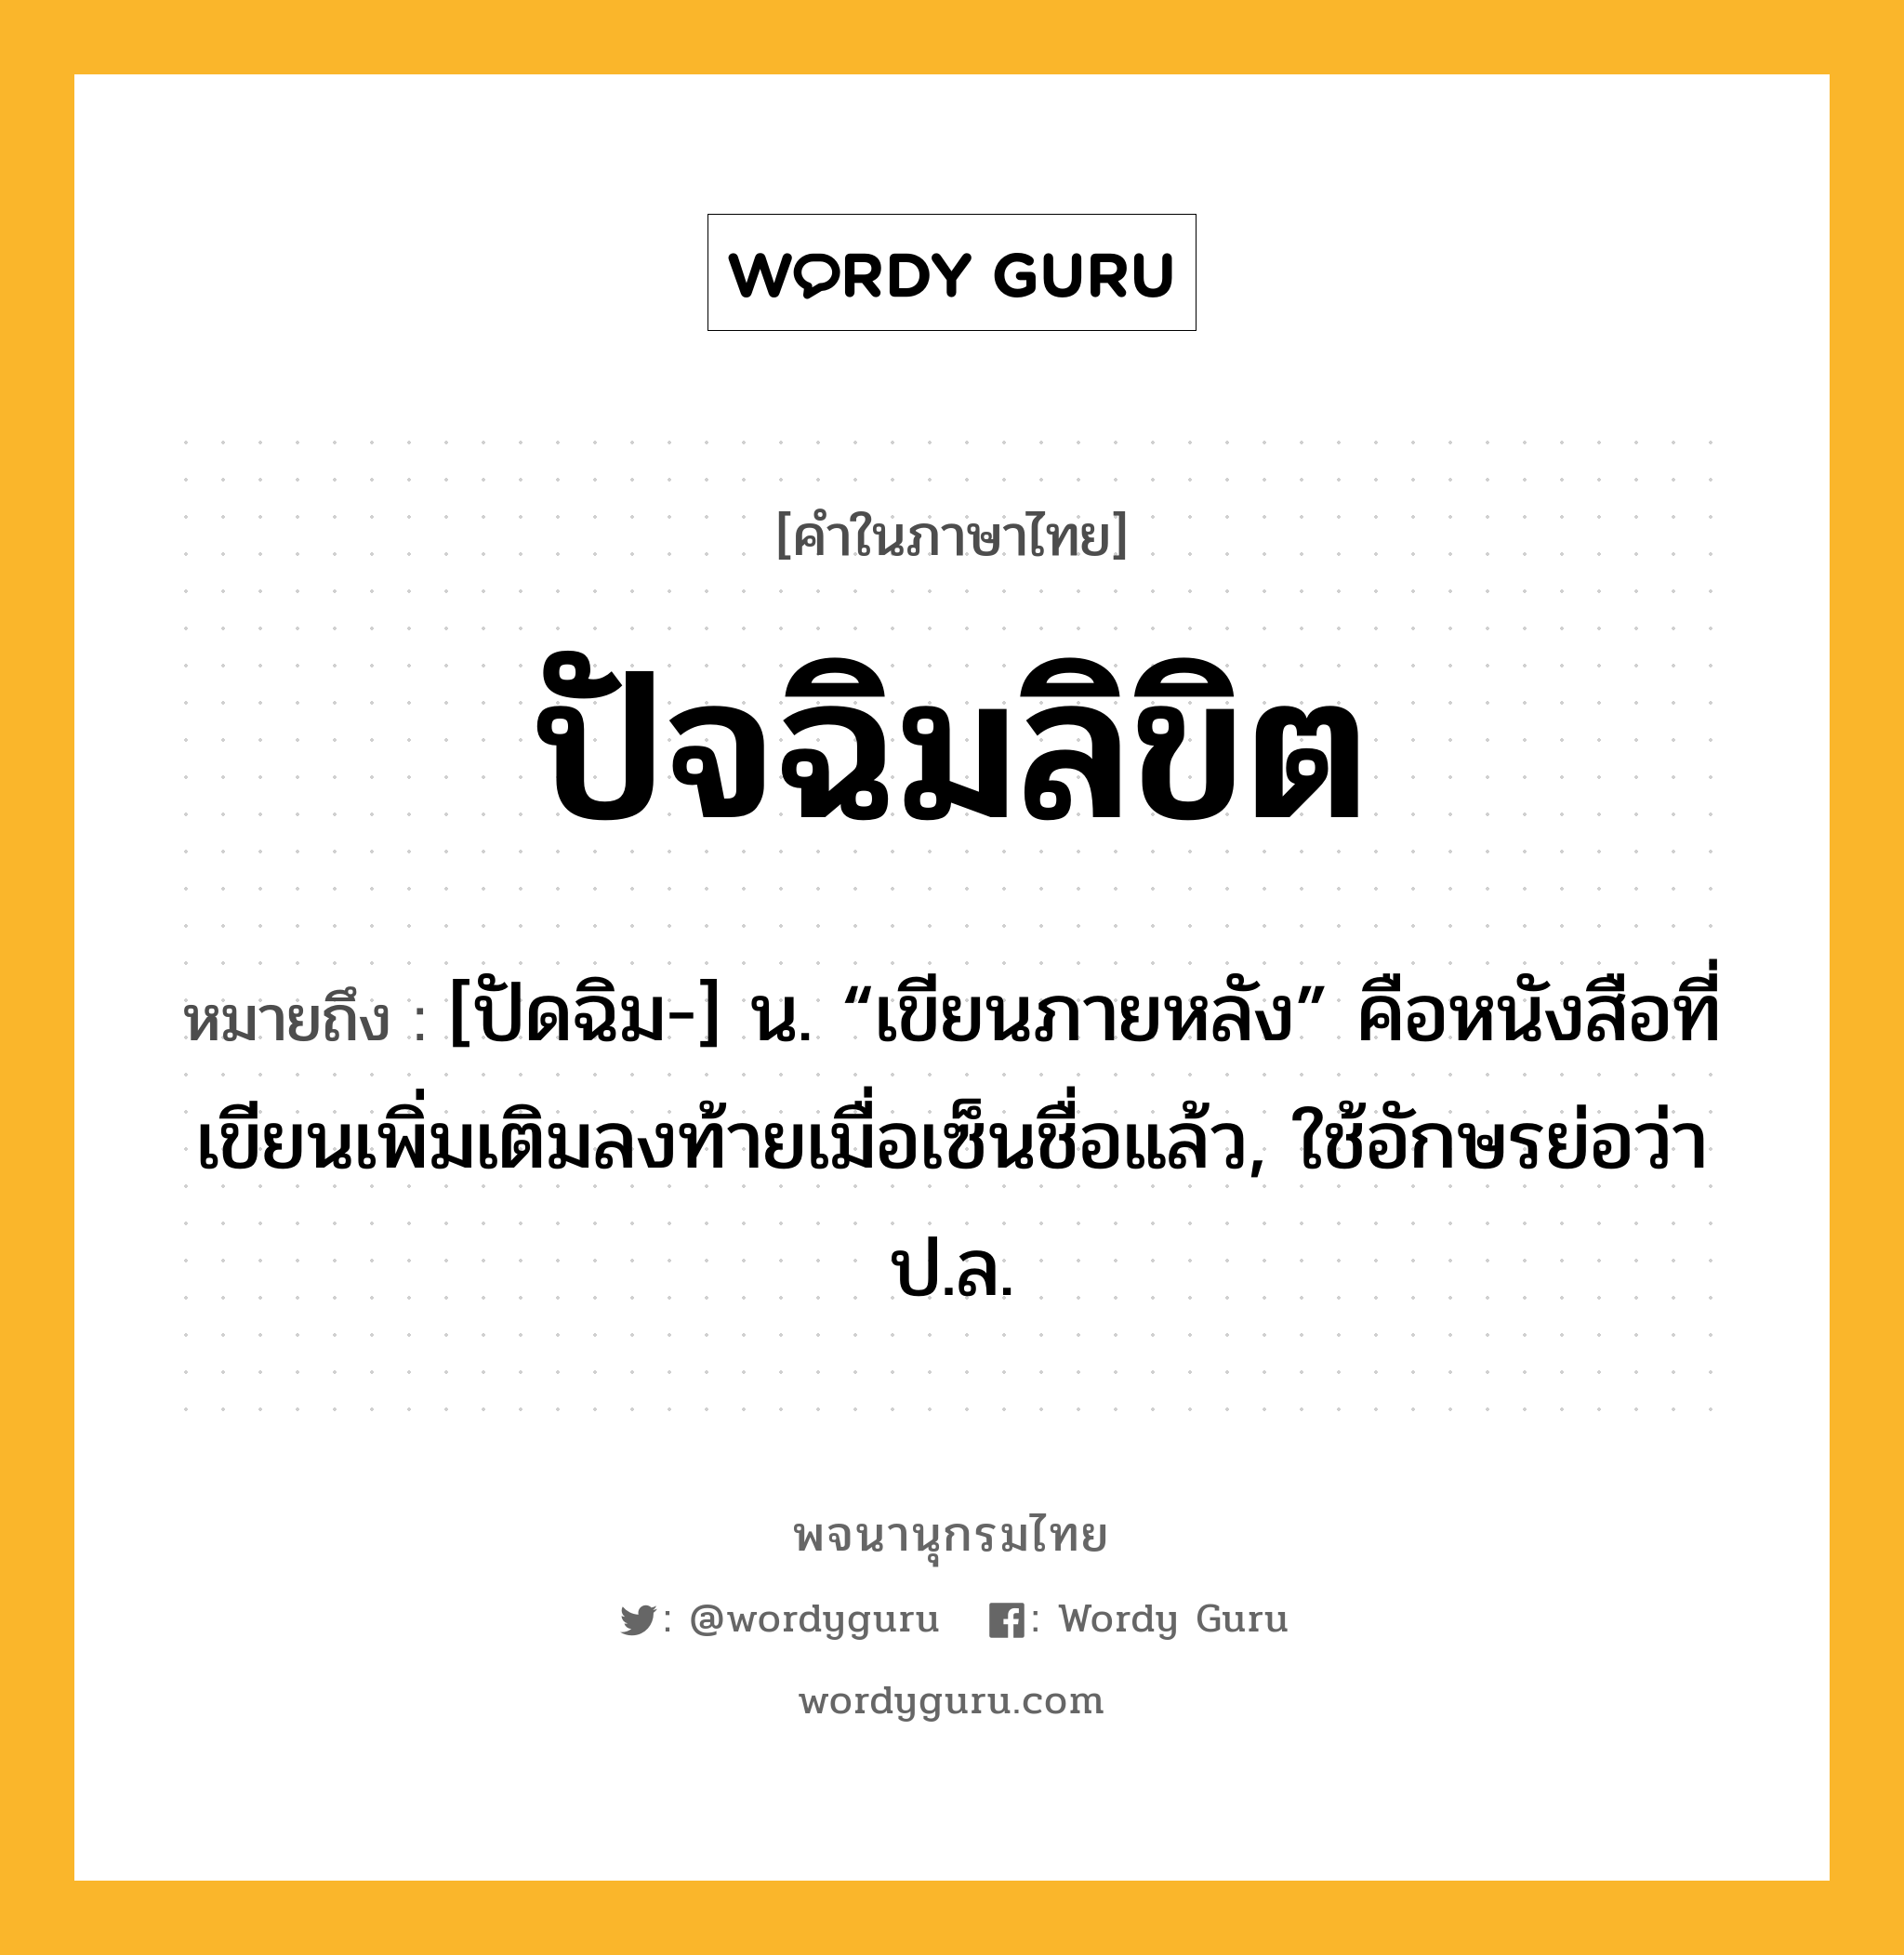 ปัจฉิมลิขิต ความหมาย หมายถึงอะไร?, คำในภาษาไทย ปัจฉิมลิขิต หมายถึง [ปัดฉิม-] น. “เขียนภายหลัง” คือหนังสือที่เขียนเพิ่มเติมลงท้ายเมื่อเซ็นชื่อแล้ว, ใช้อักษรย่อว่า ป.ล.